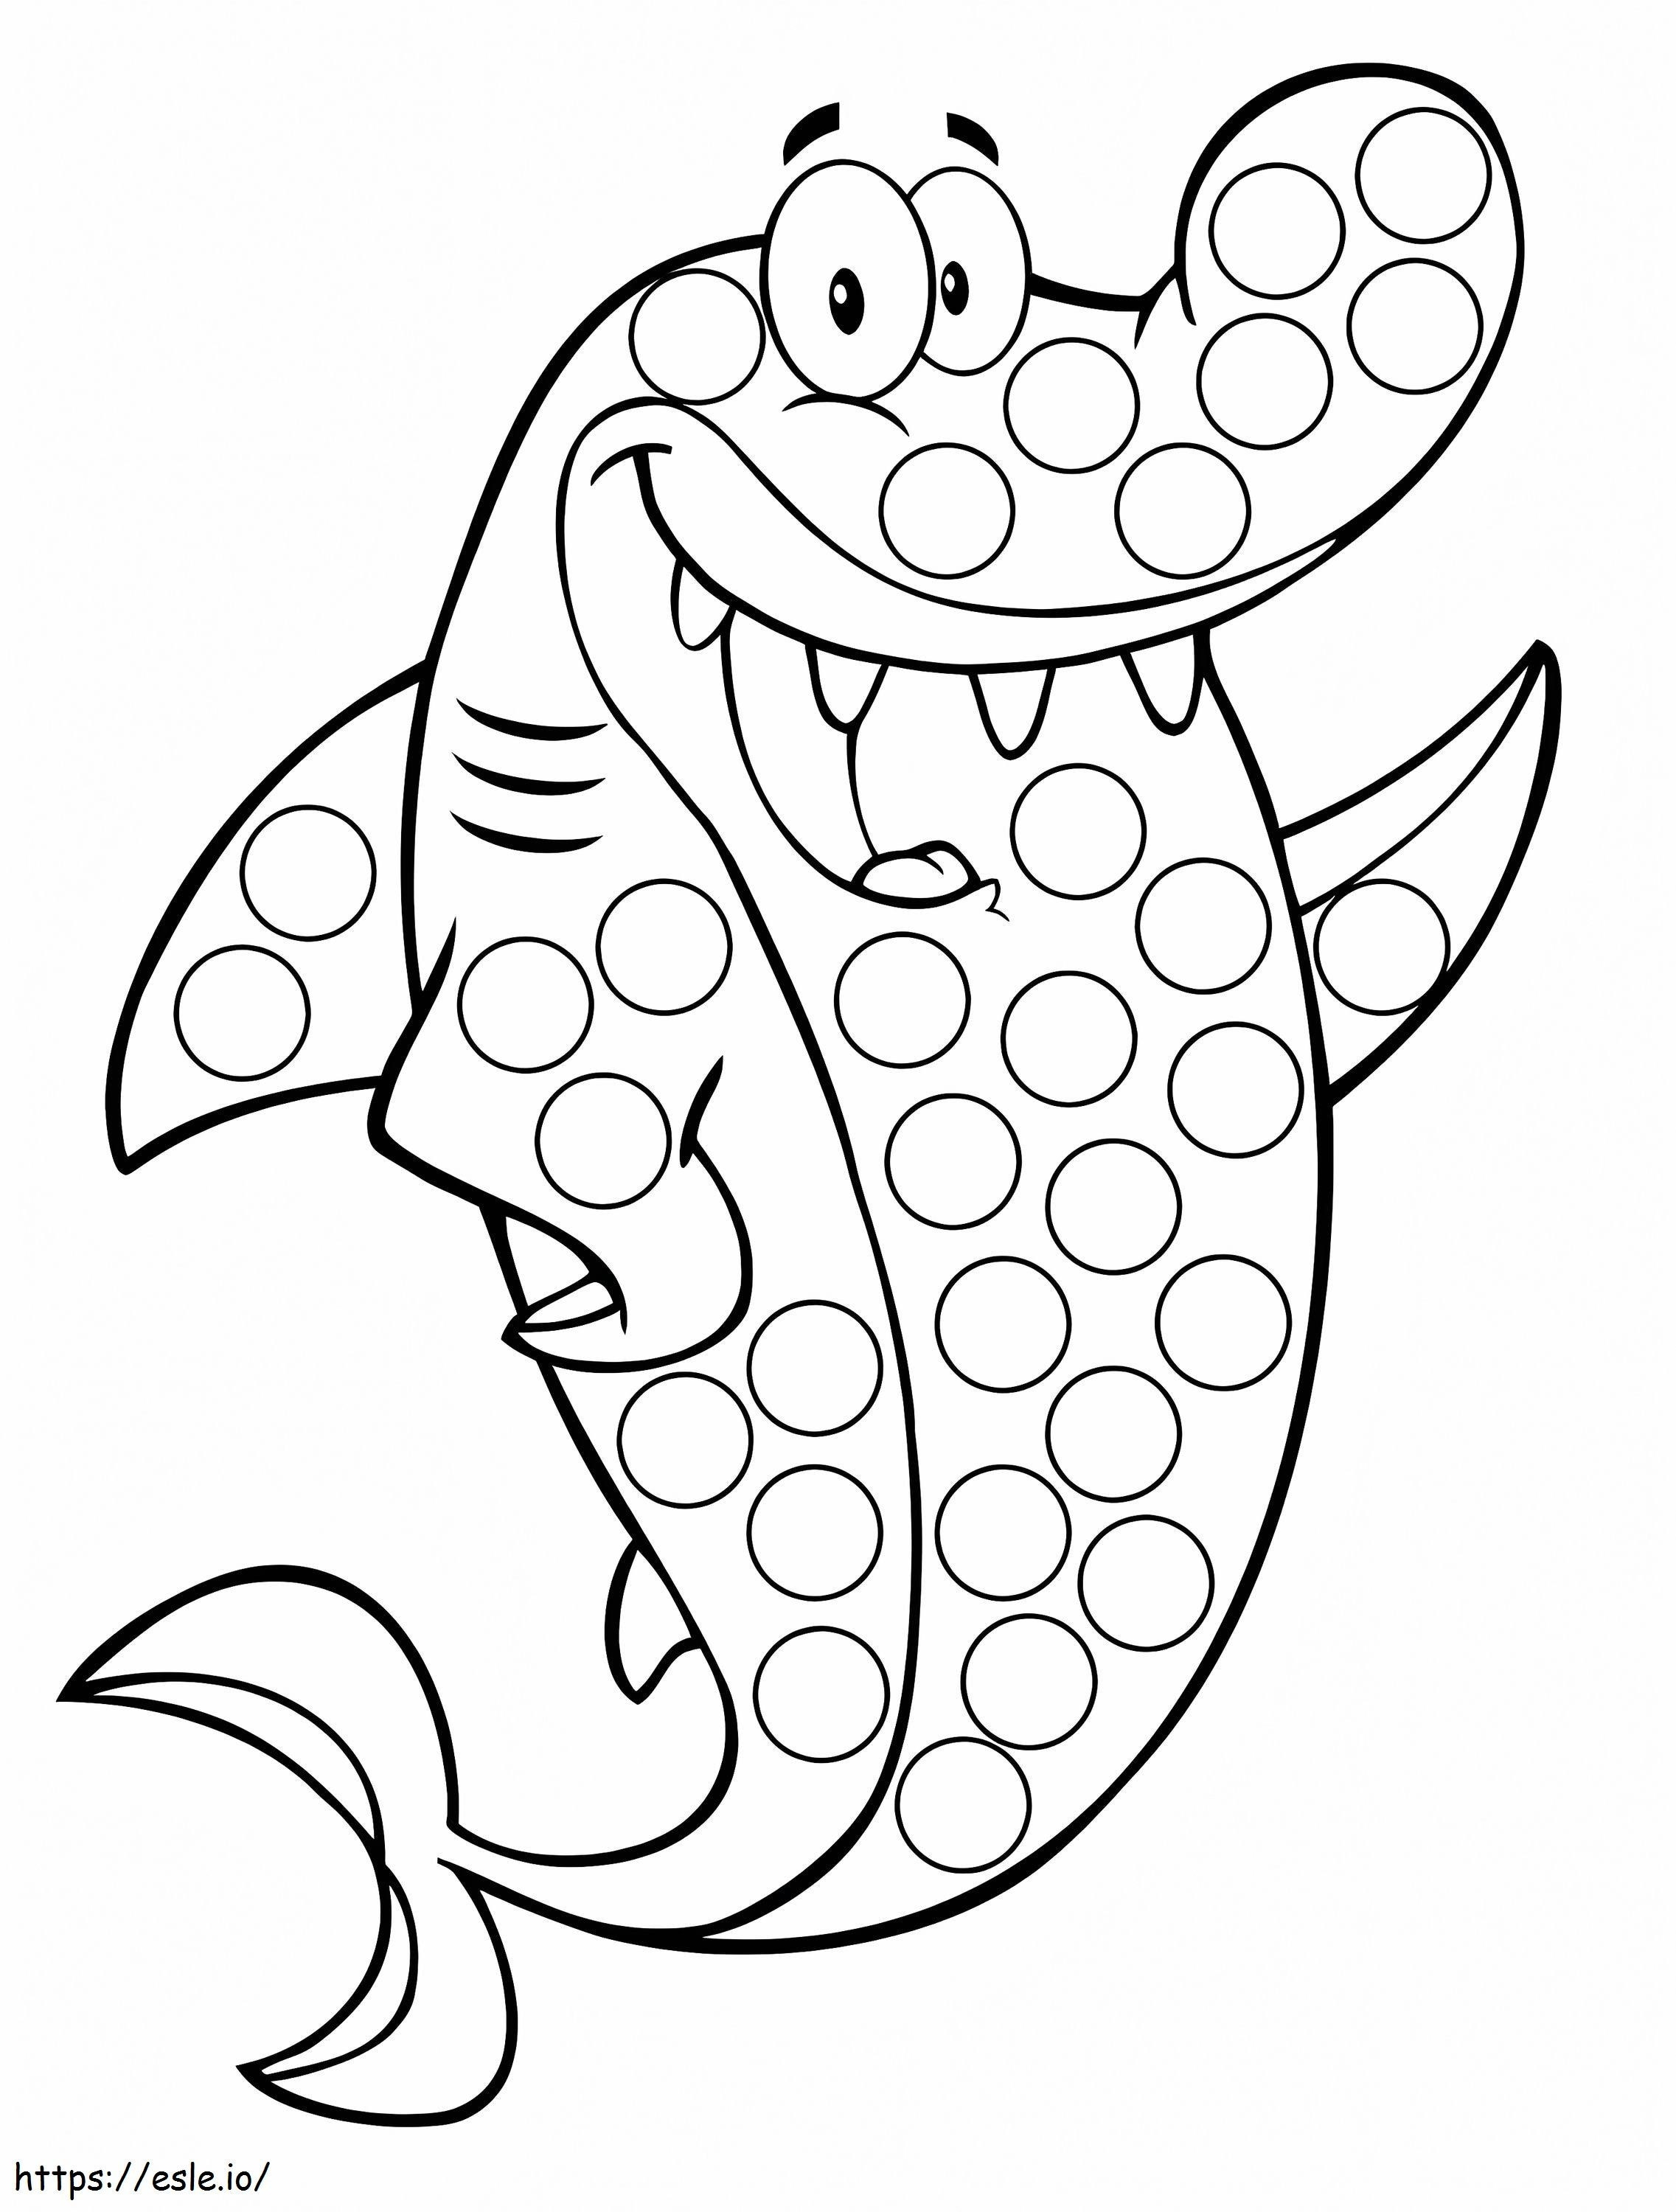 Marcador de pontos de tubarão para colorir